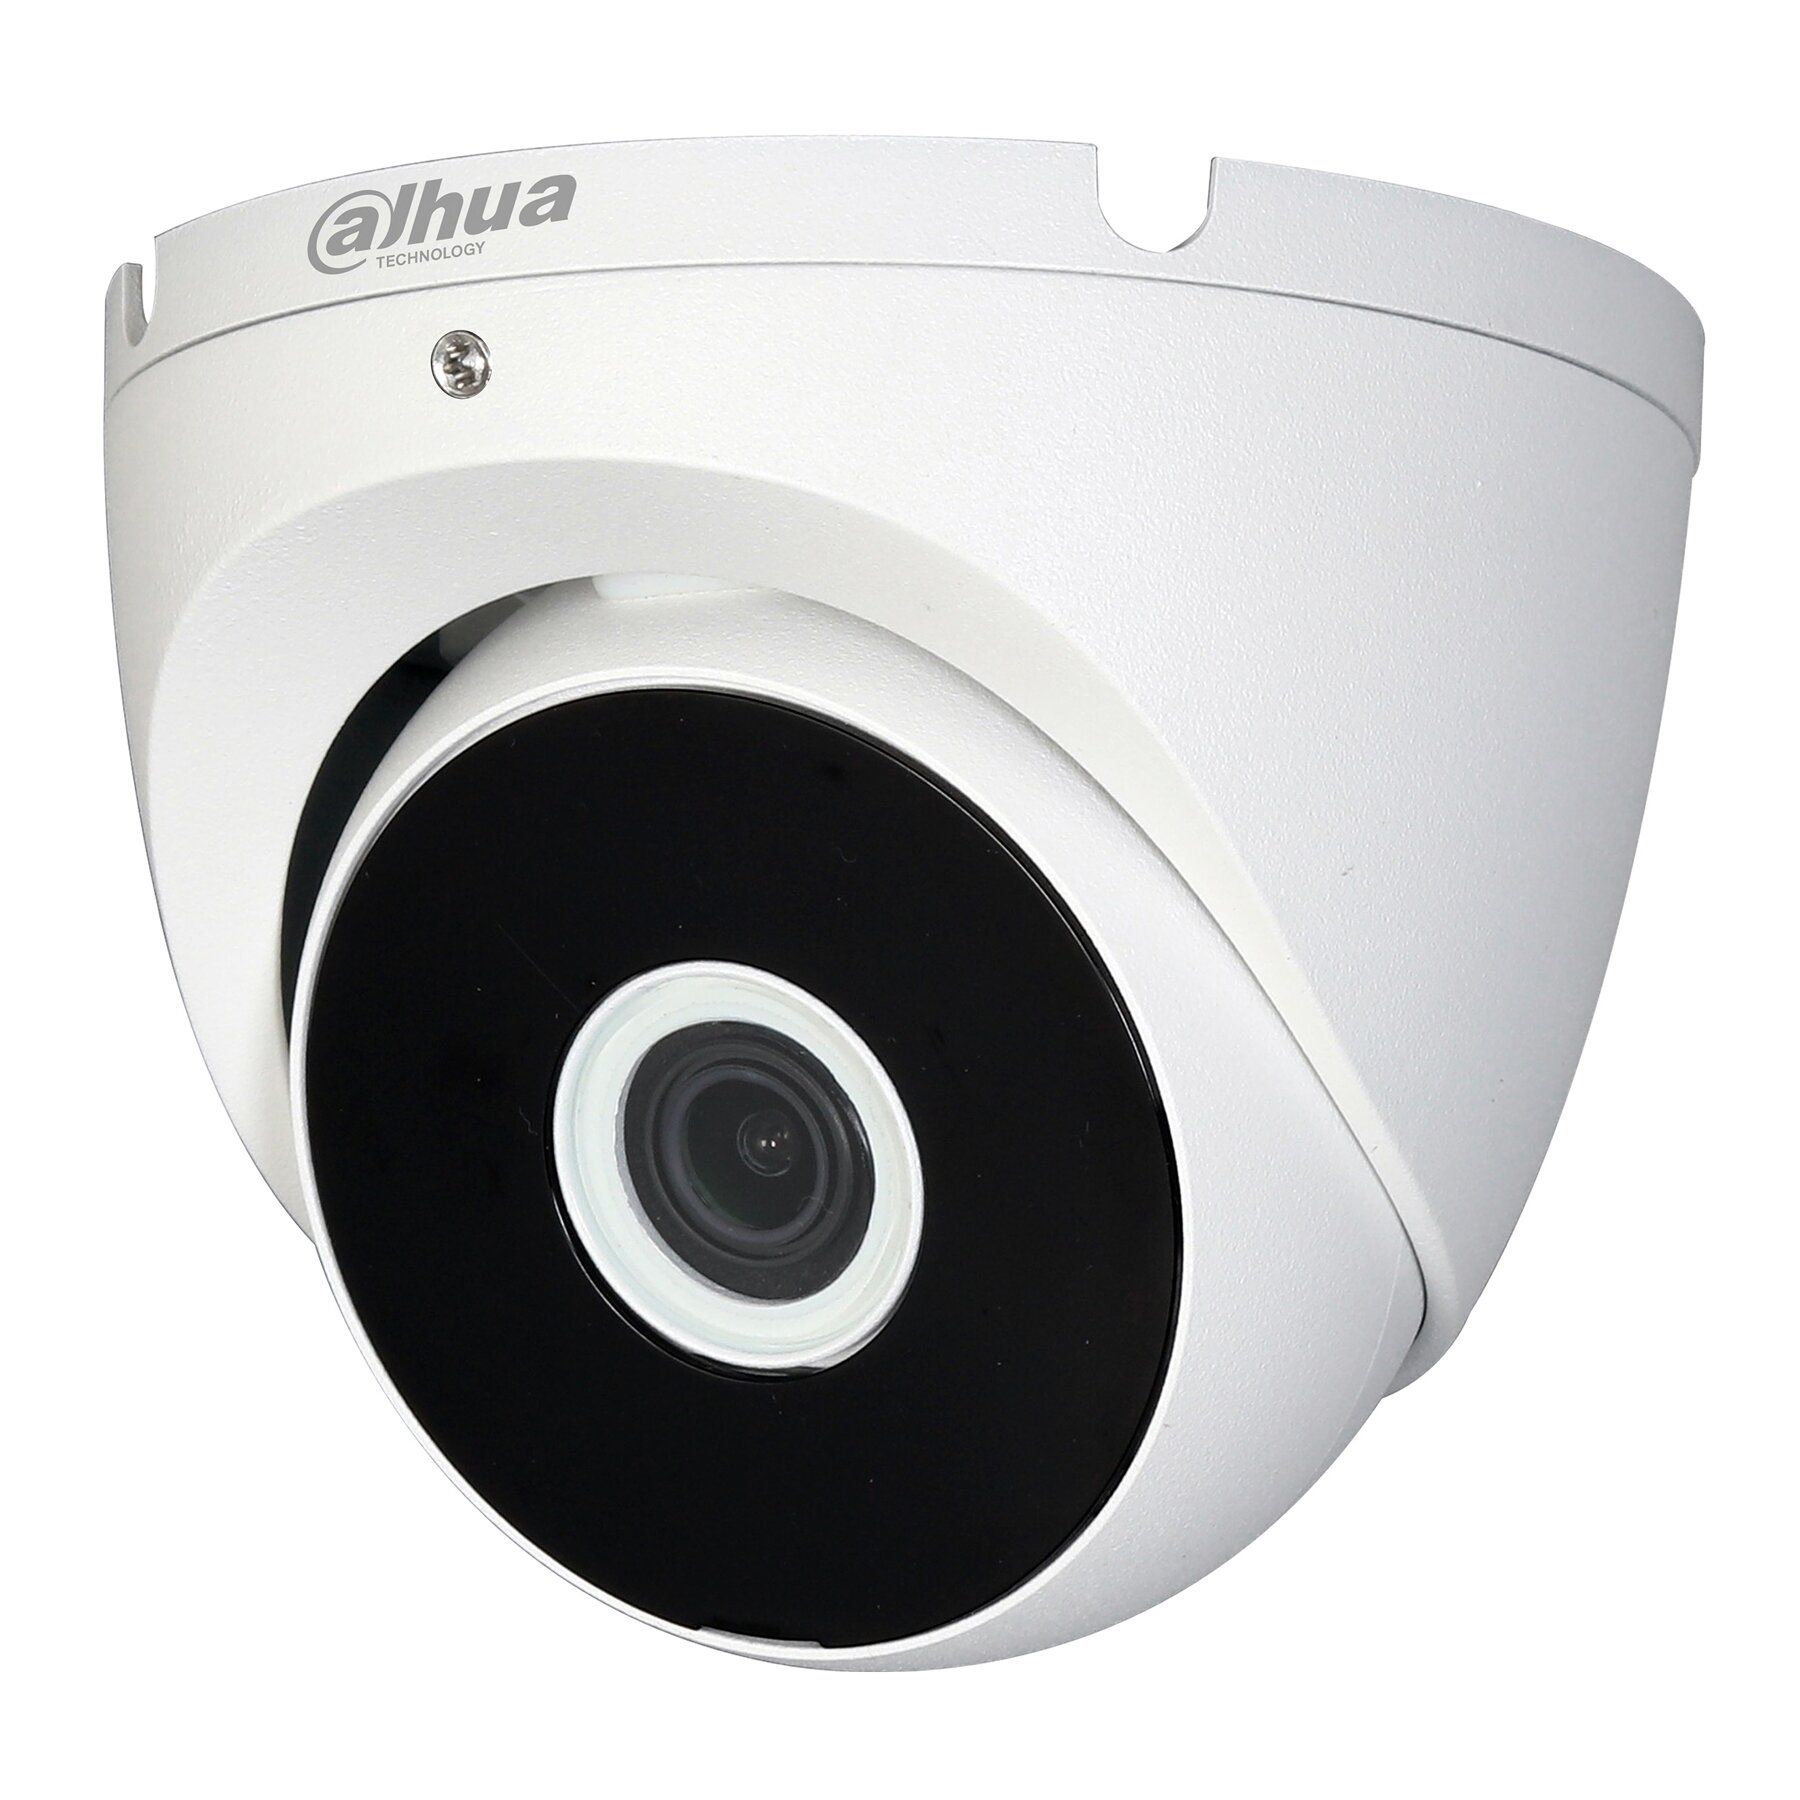 Dahua камеры купить. Dahua DH-Hac-t1a11p-0360b. Видеокамера ez-IP ez-Hac-b1a11p-0280b. Dahua ez-Hac-b1a11p-0360b. Dahua DH-Hac-t2a51p-0280b.